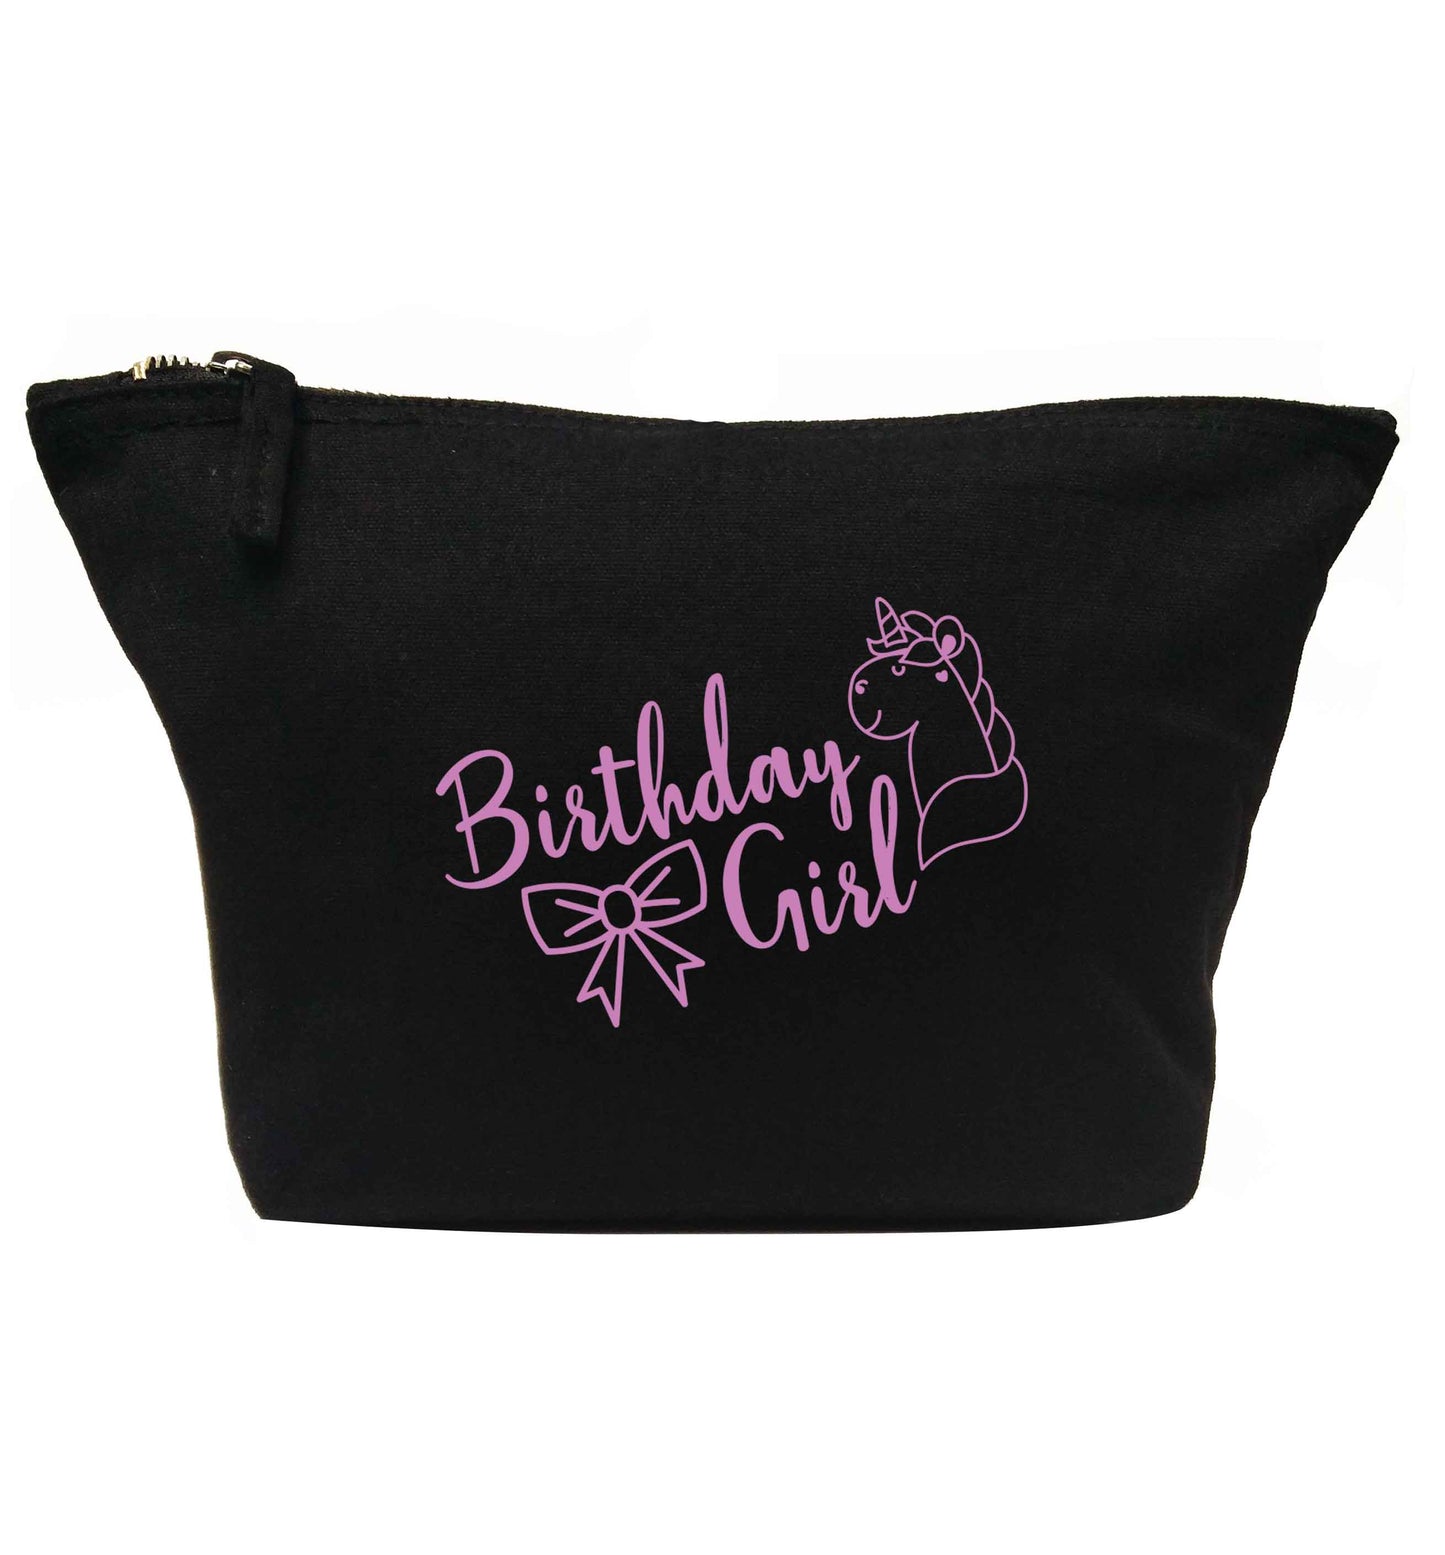 Birthday girl | Makeup / wash bag